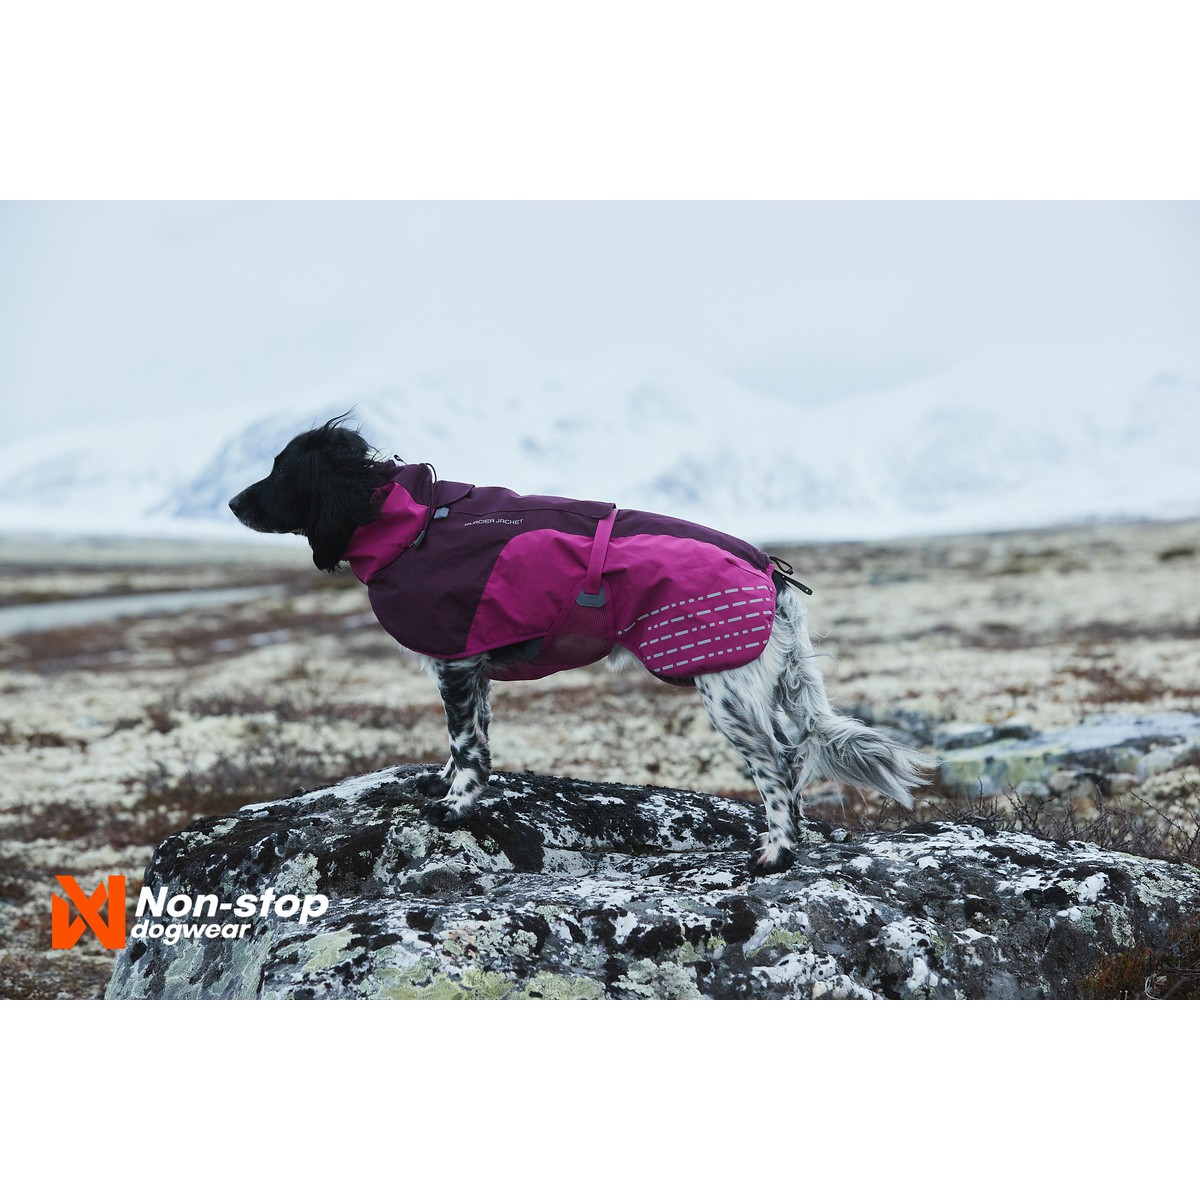 Non-Stop dogwear Glacier Manteau Glacier Jacket T55 Violet T55